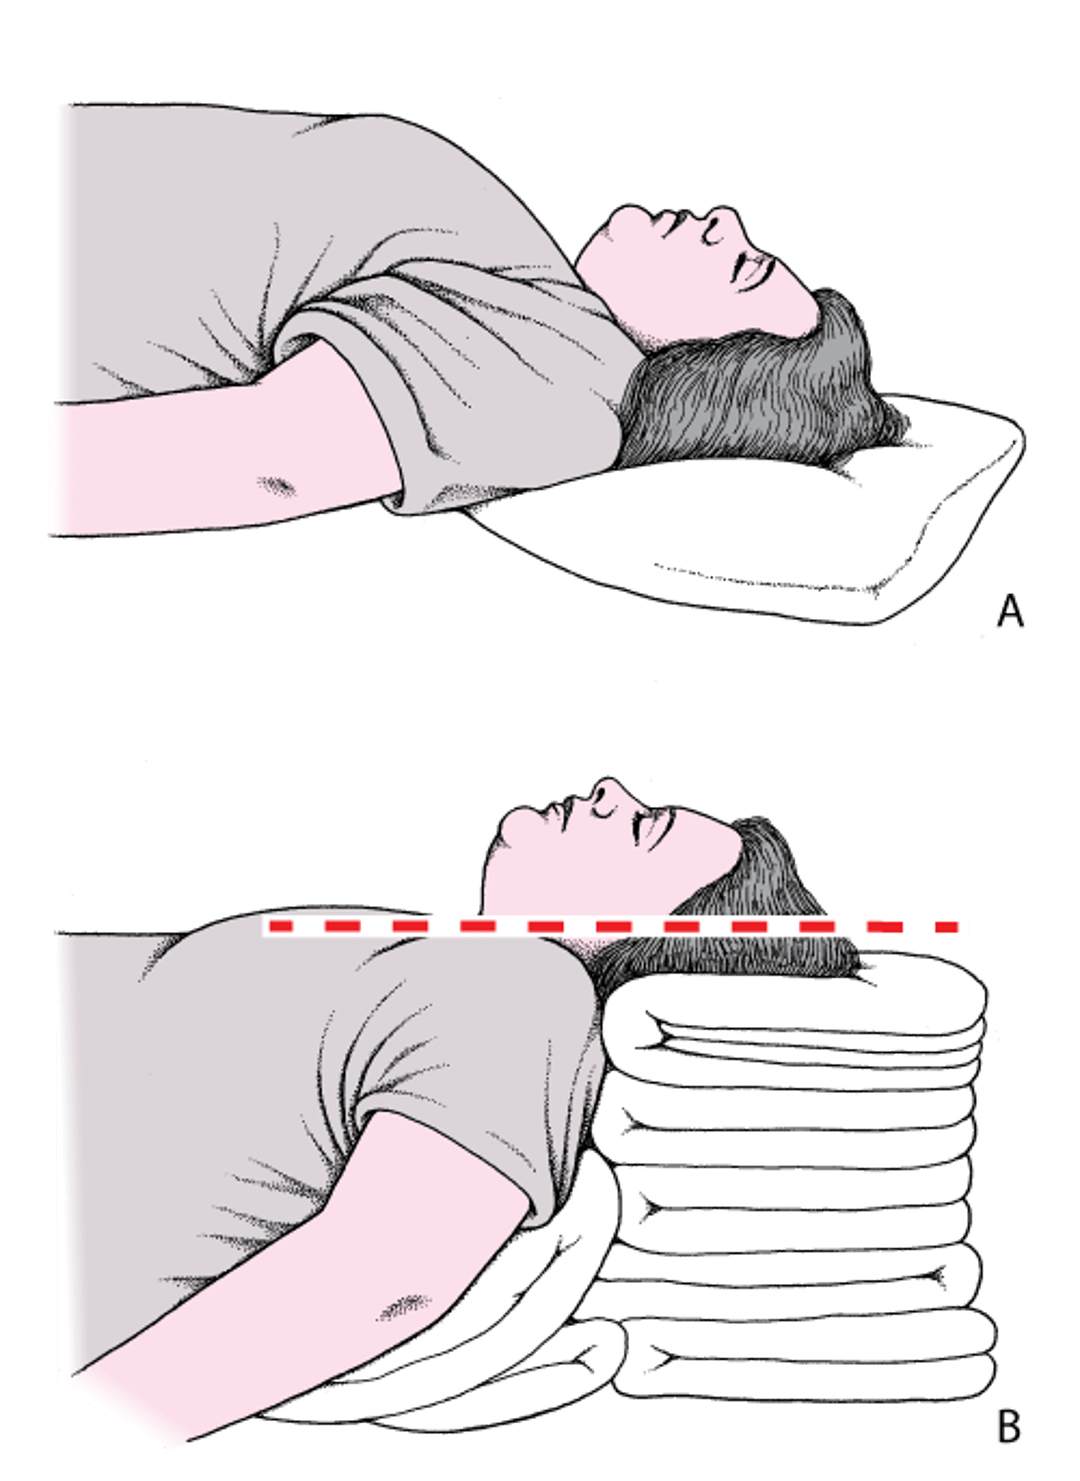 Posizionamento della testa e del collo per l'apertura delle vie aeree: posizione di sniffing